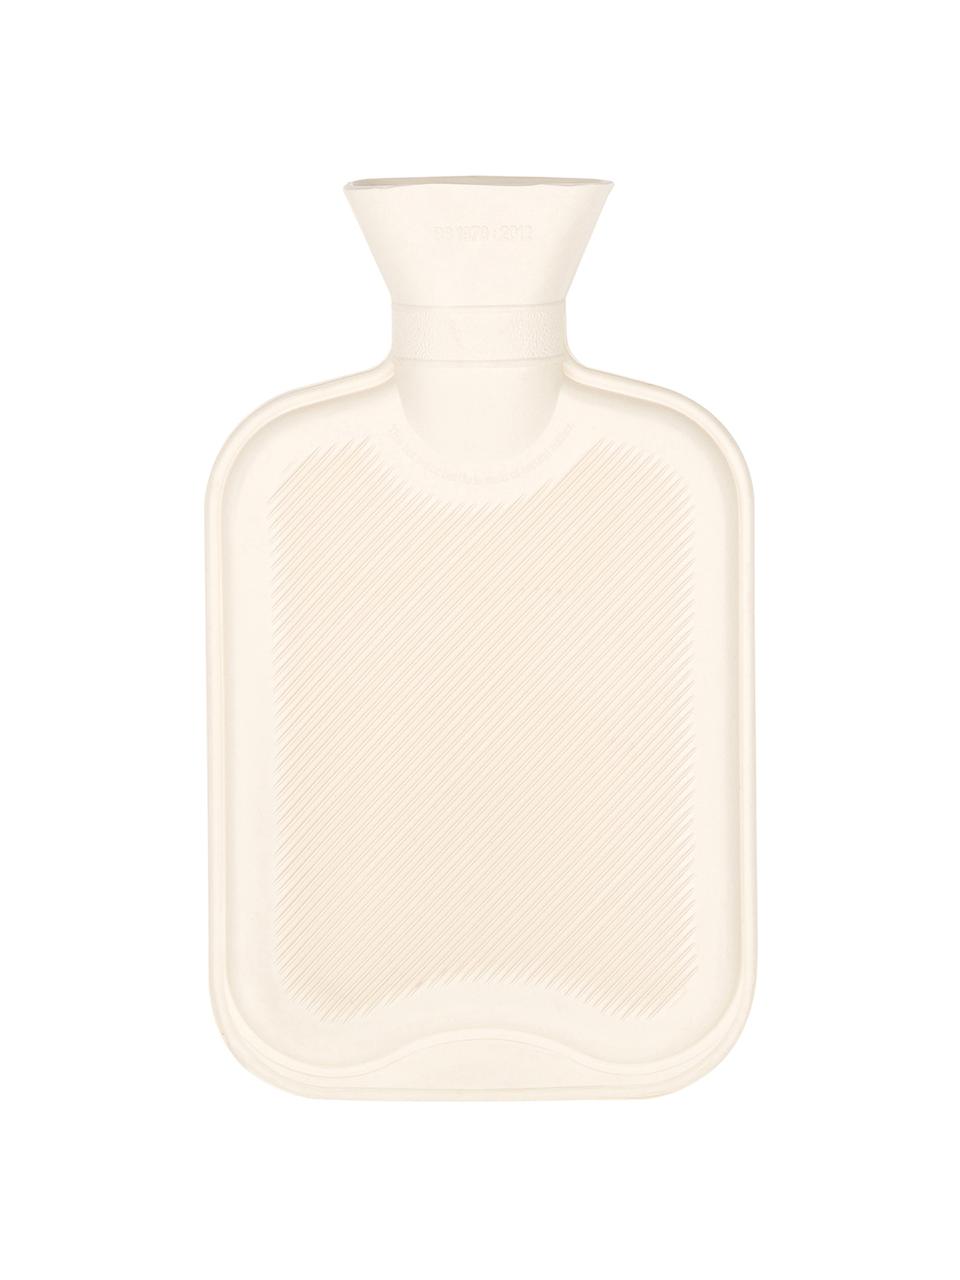 Cashmere-Wärmflasche Florentina, Bezug: 70 % Kaschmir, 30 % Wolle, Hellgrau, Dunkelgrau, B 19 x L 30 cm